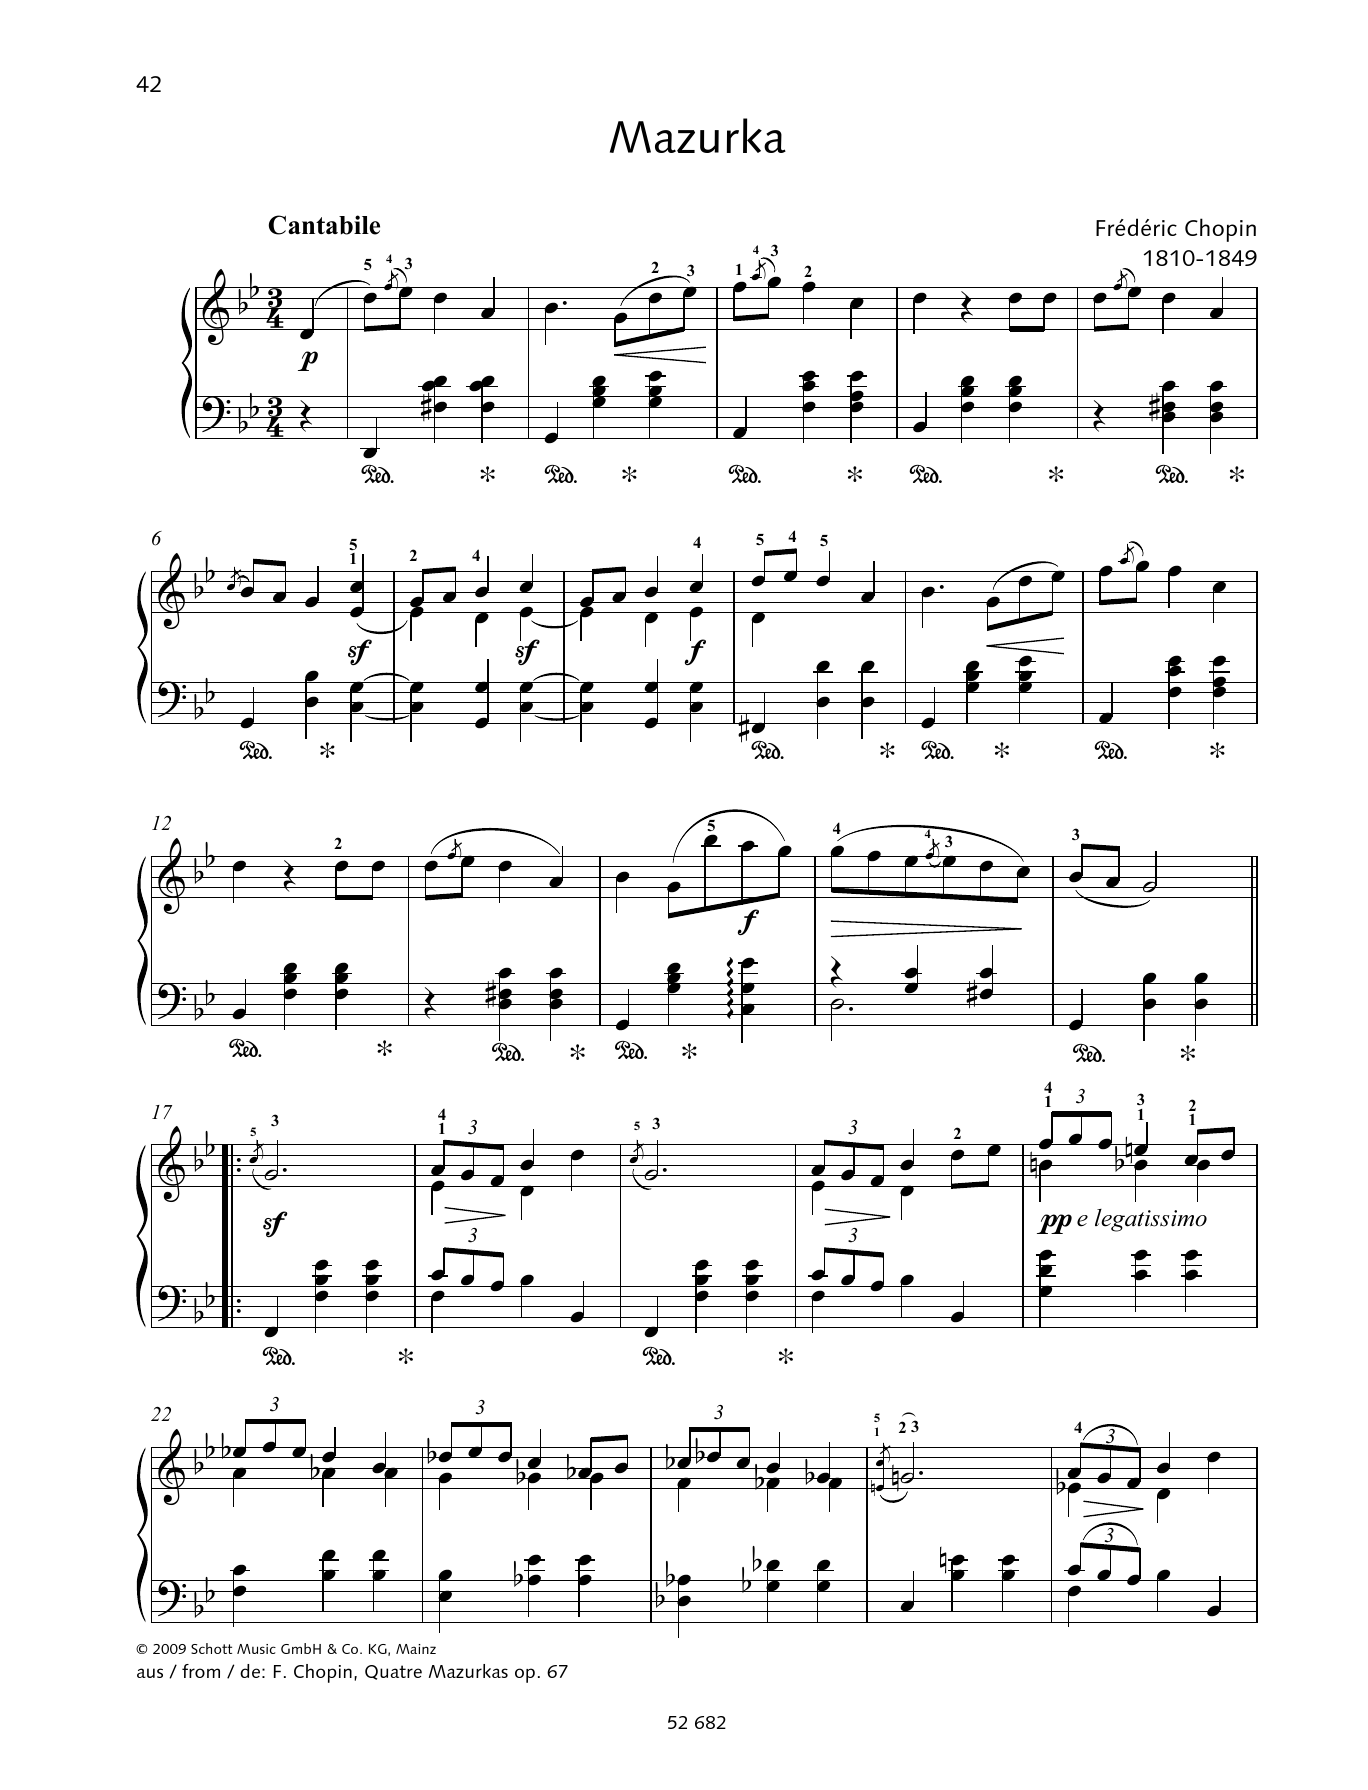 Mazurka in G minor sheet music